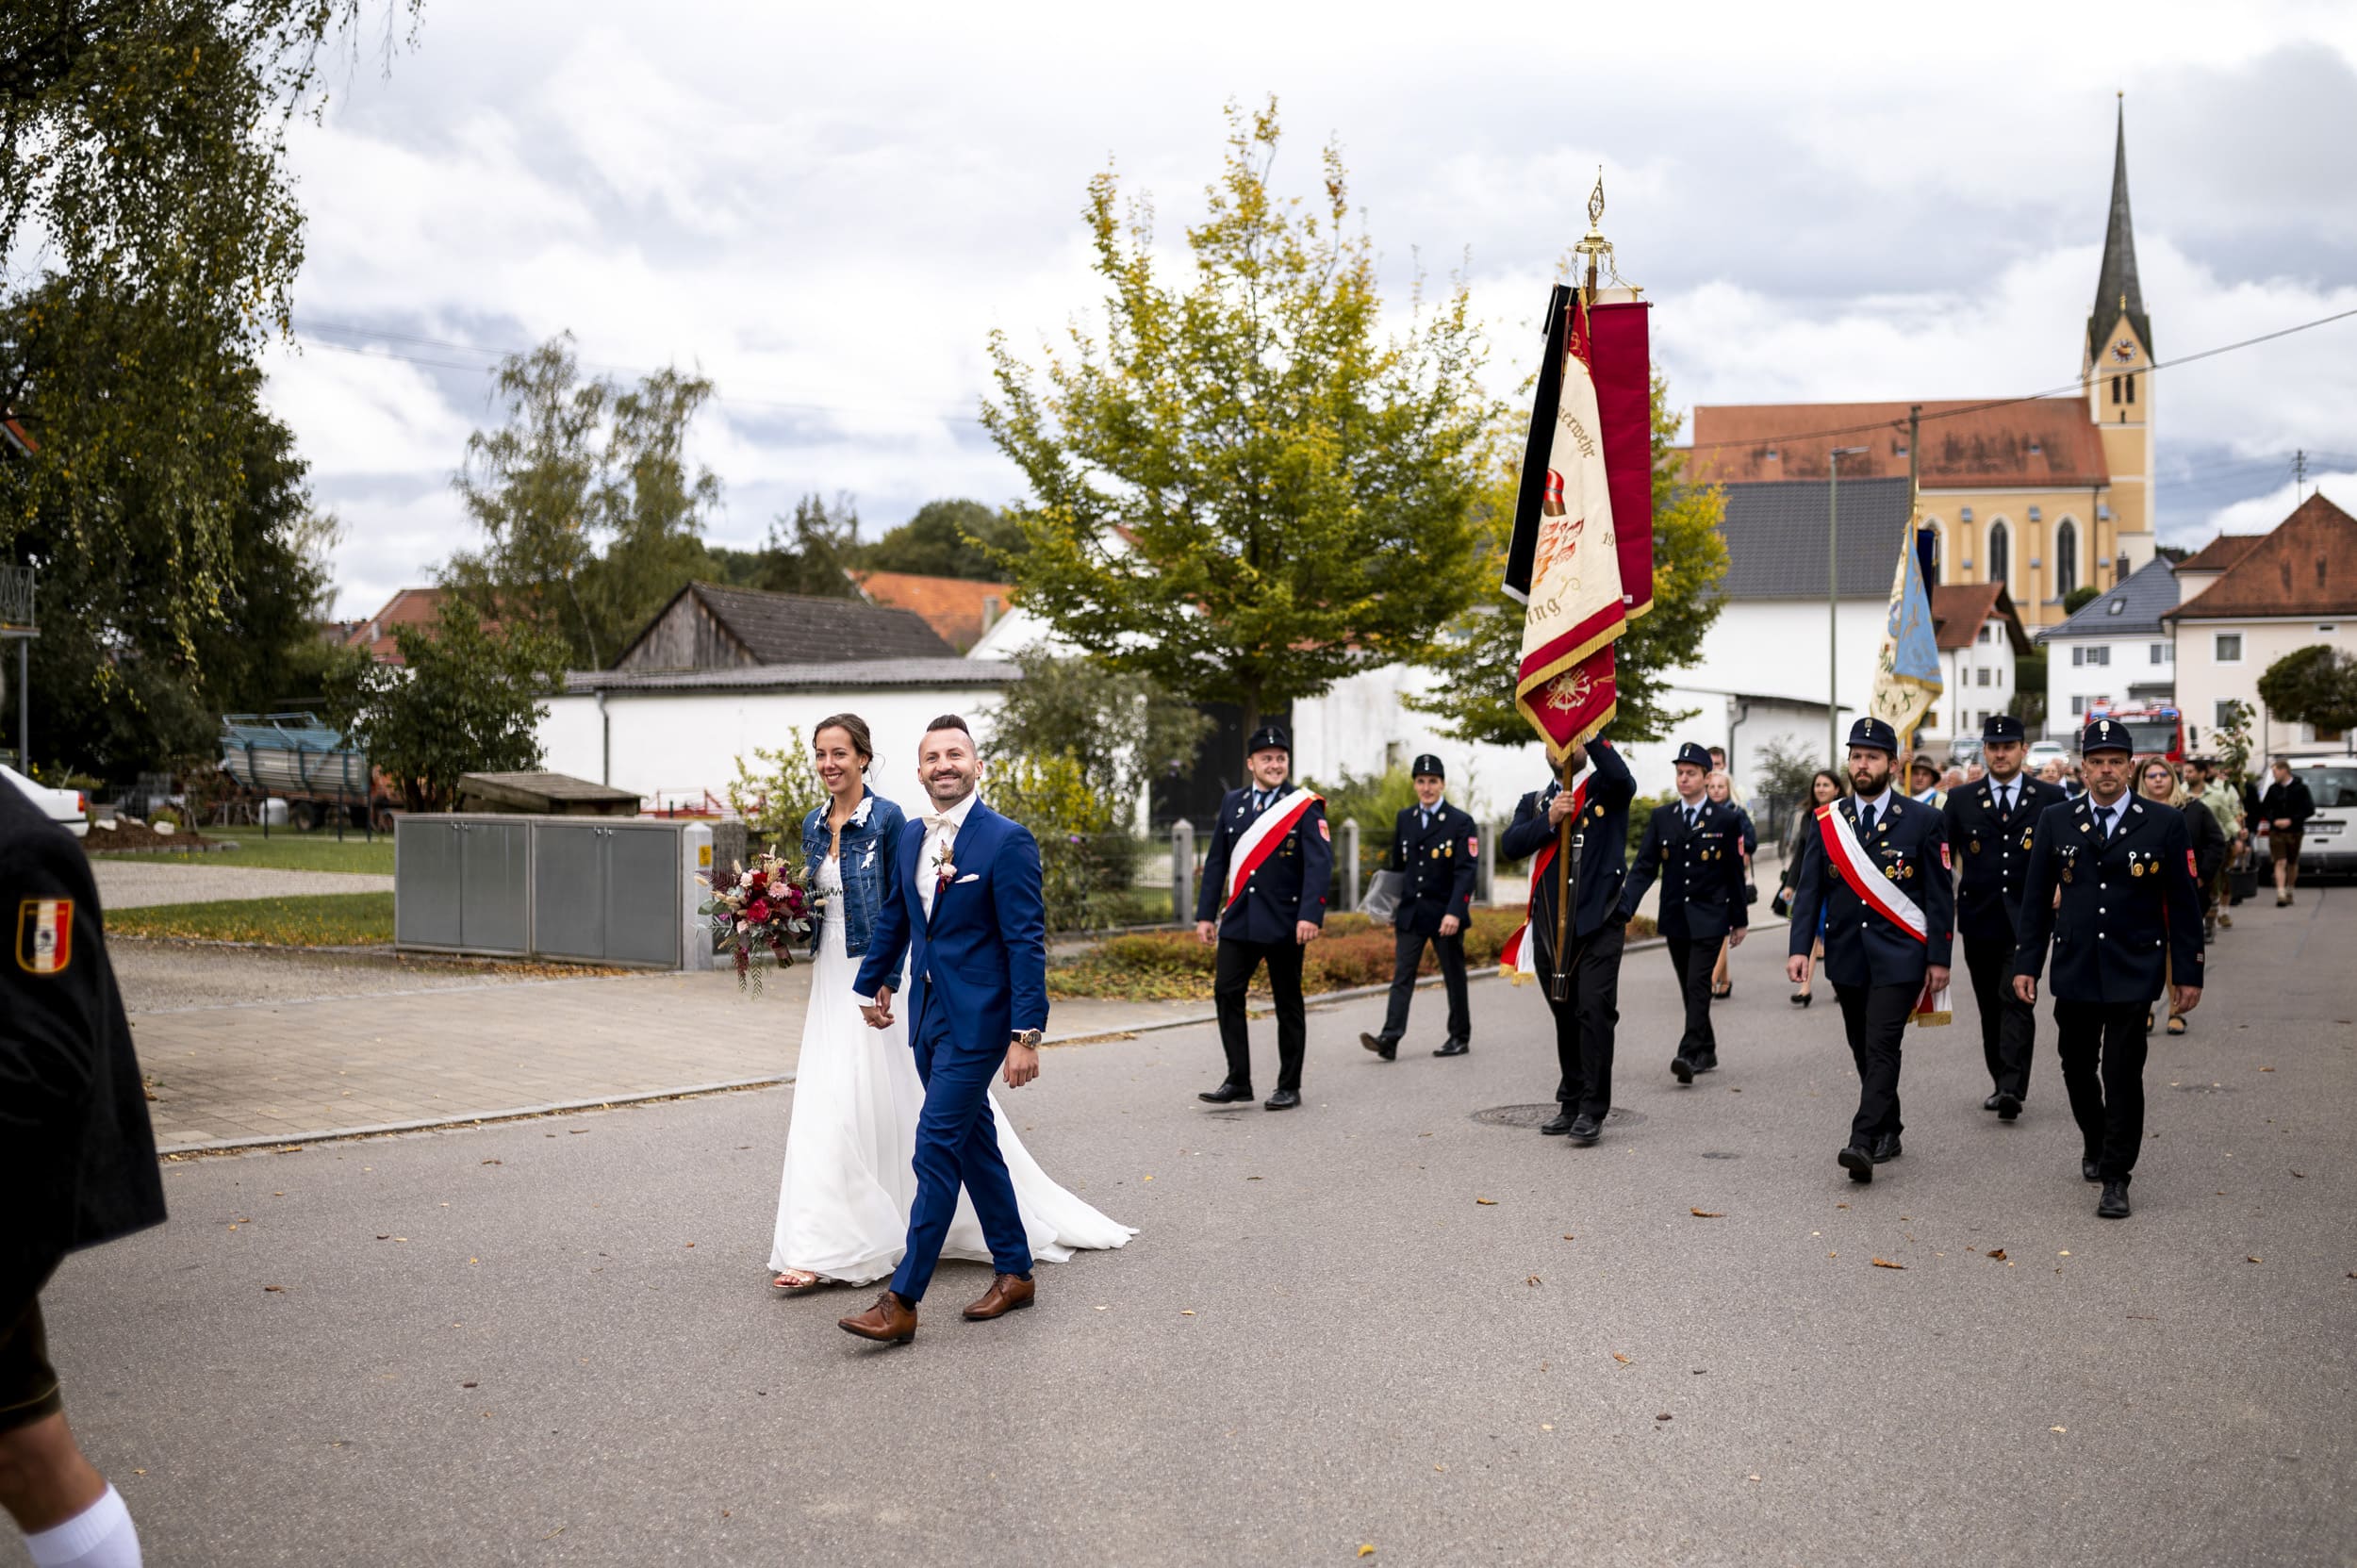 Das Brautpaar läuft bei Hochzeitszug von Kirche Aindling zum Wirtshaus Moosbräu.